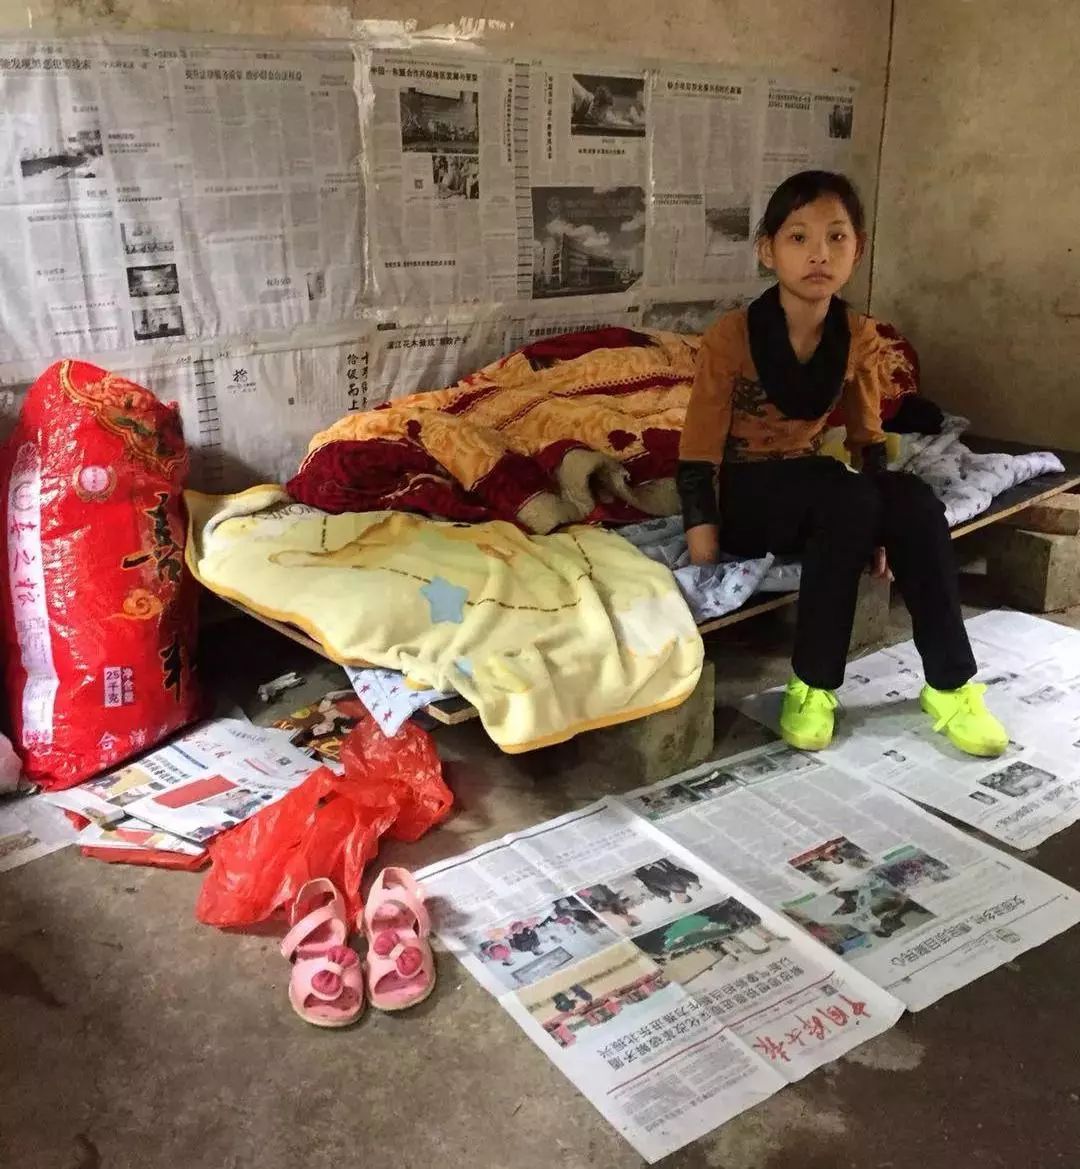 她是一个母亡父弃,无依无靠的孤儿,现暂住在龙潭镇长岭村五保村里